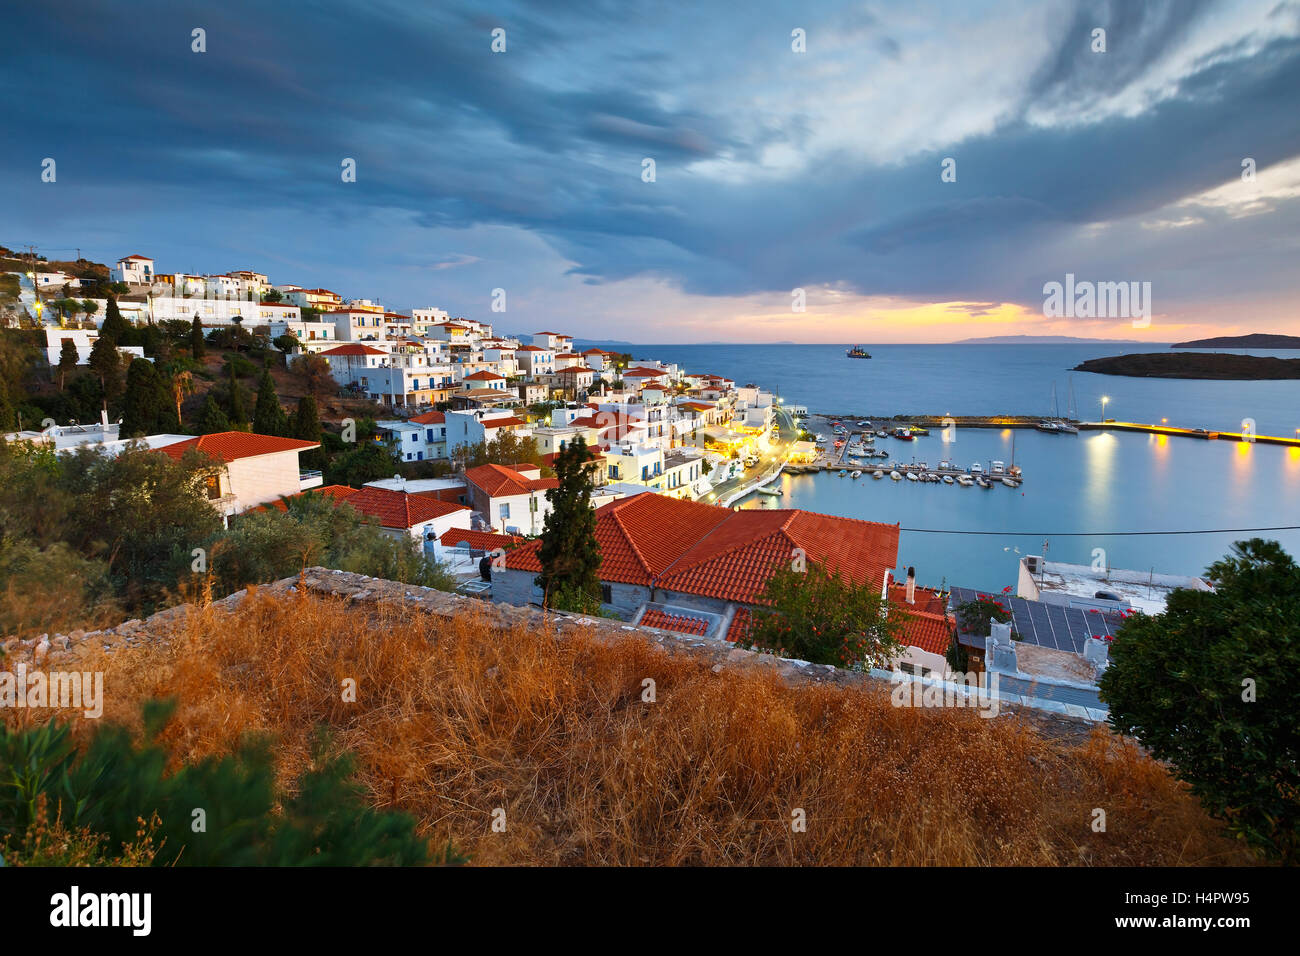 Le village de Batsi, sur la côte de l'île d'Andros en Grèce. Banque D'Images